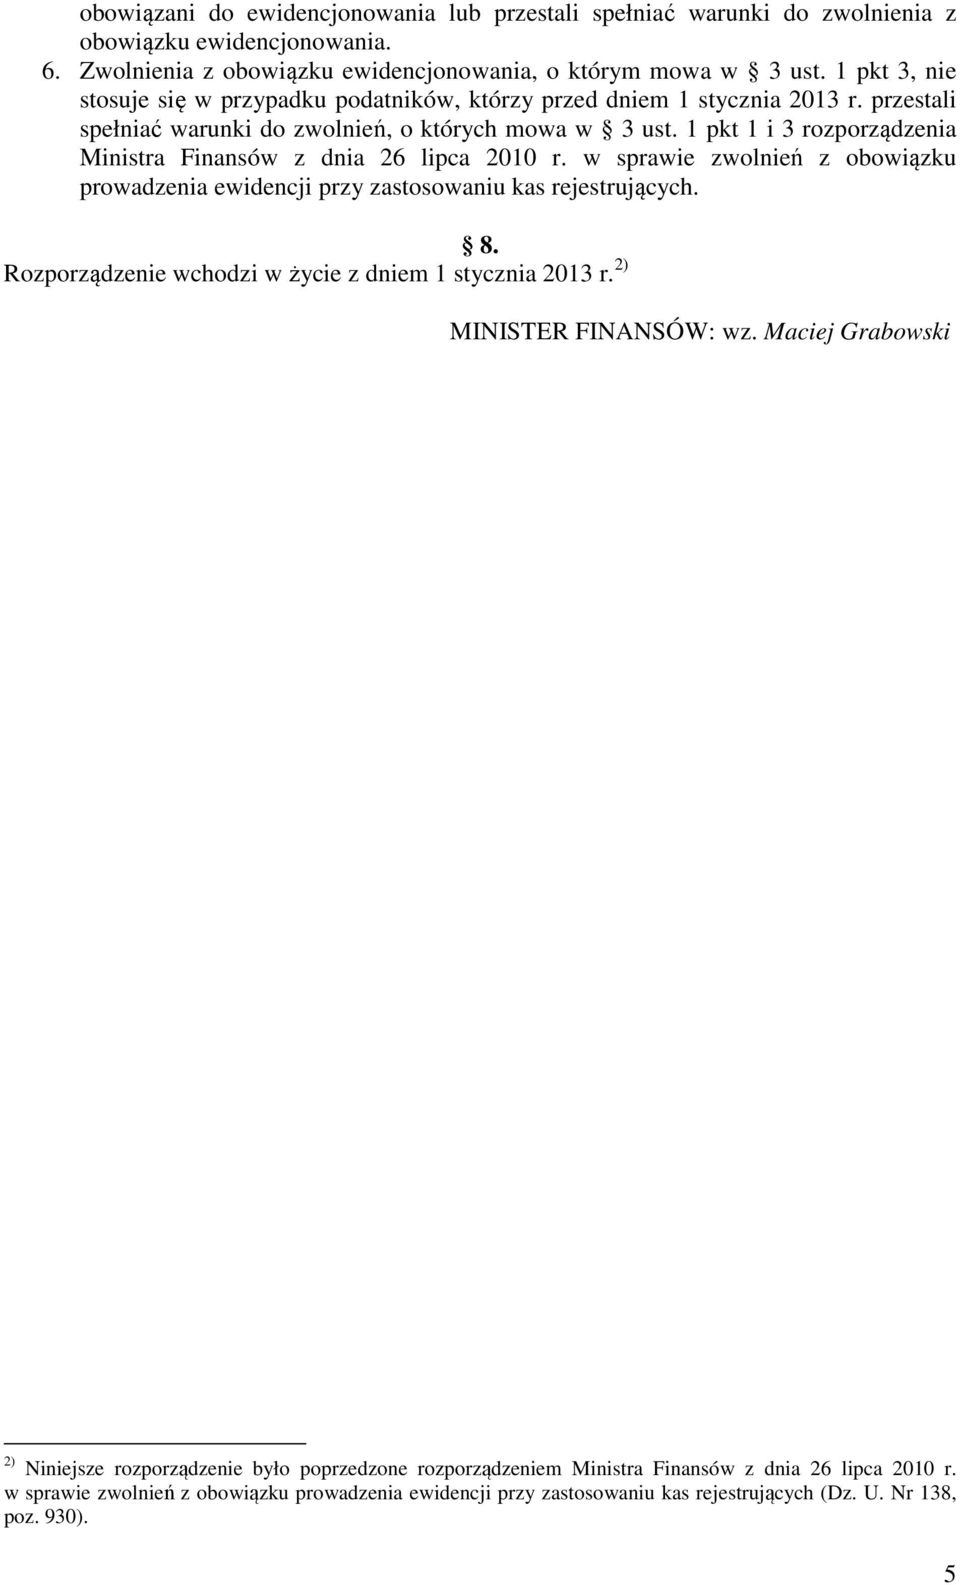 1 pkt 1 i 3 rozporządzenia Ministra Finansów z dnia 26 lipca 2010 r. w sprawie zwolnień z obowiązku prowadzenia ewidencji przy zastosowaniu kas rejestrujących. 8.